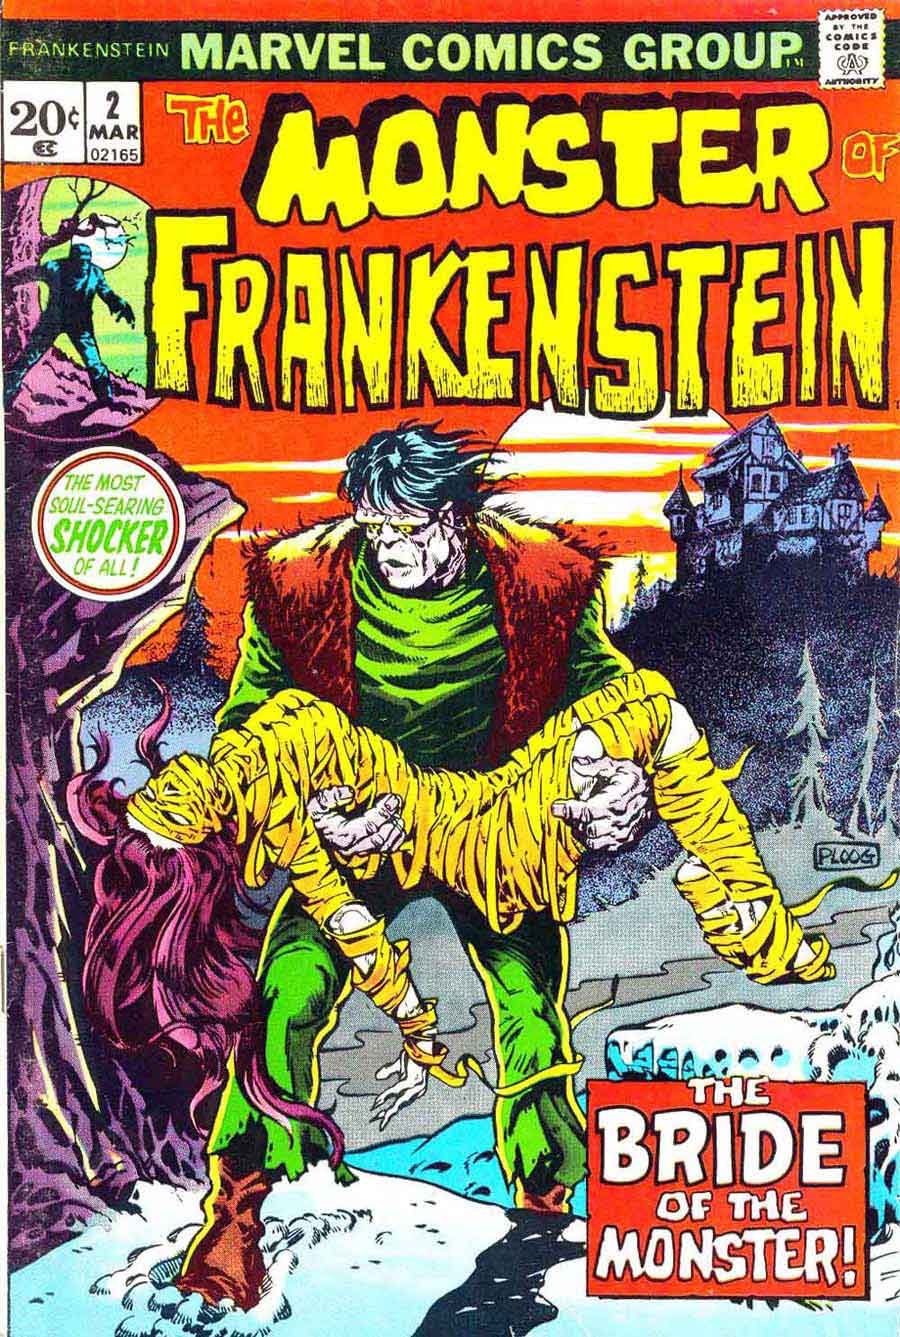 Frankenstein v2 #2 marvel comic book cover art by Mike Ploog